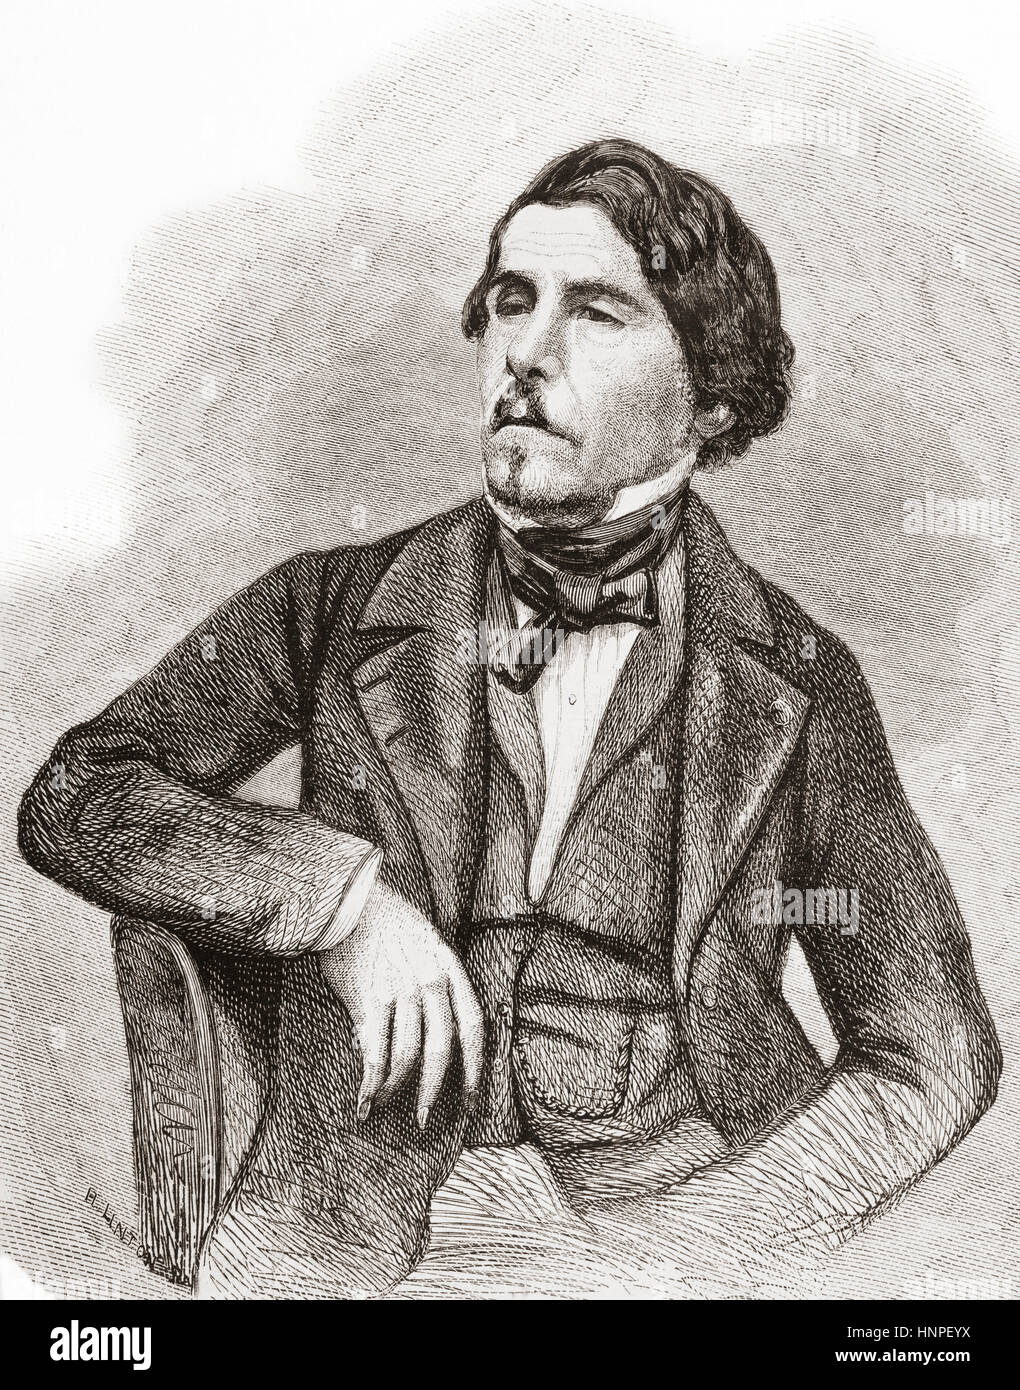 Ferdinand Victor Eugène Delacroix, 1798 - 1863. Francese Scuola Romantica artista. Da L'Univers illustre, pubblicato a giugno 1863 Foto Stock